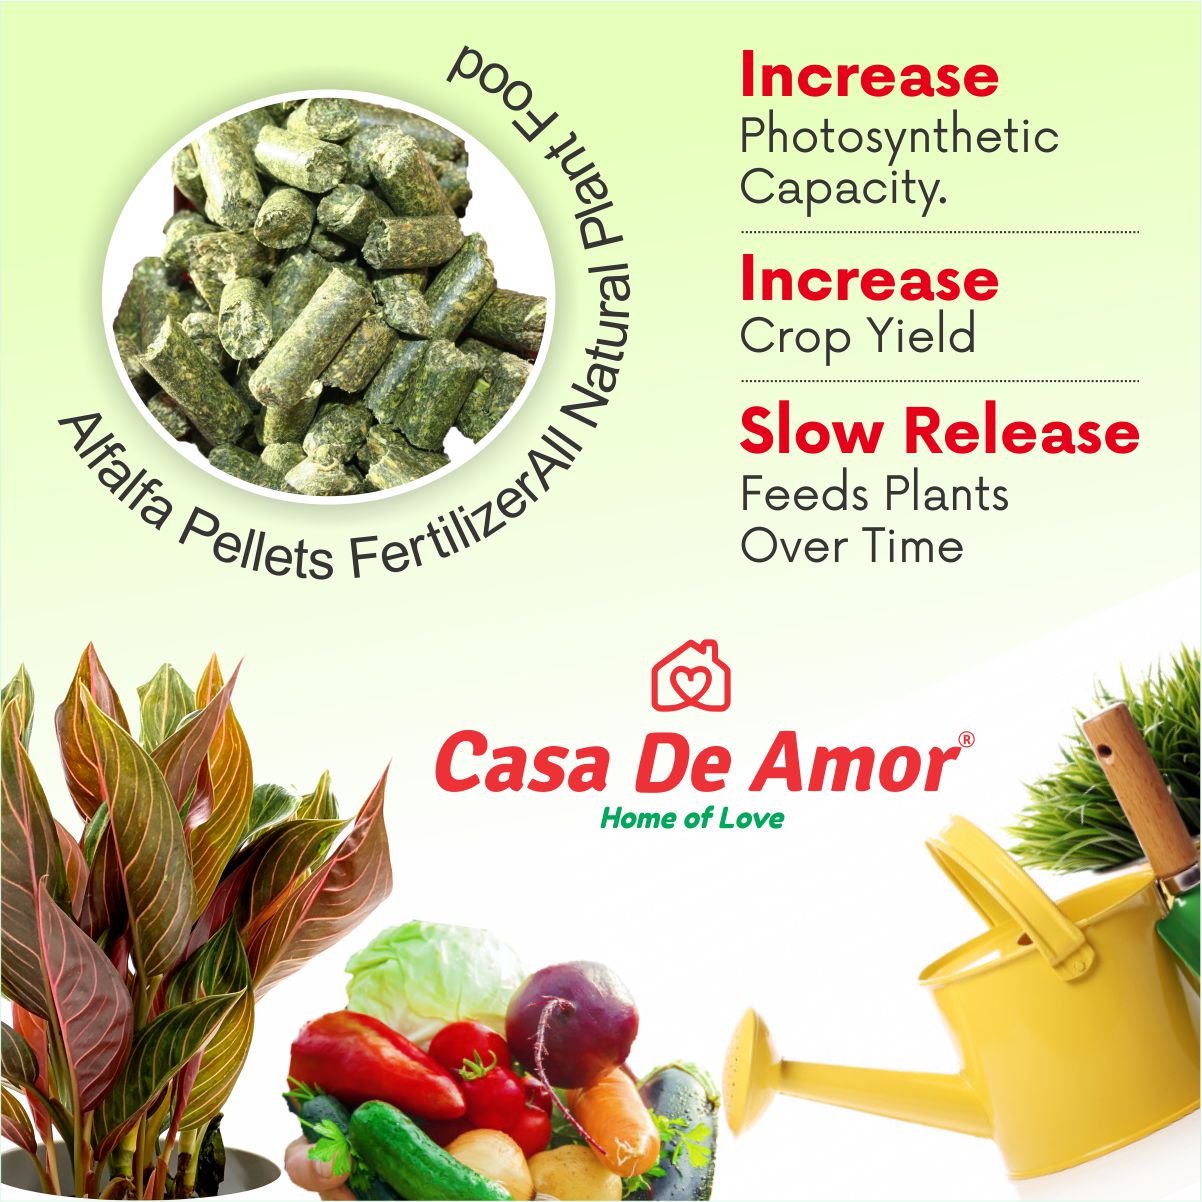 Casa De Amor Special Combo Pack- Neem Khal Powder (900 gm)+Alfalfa Pellets Organic Fertilizer (900 gm) total 1800 gm